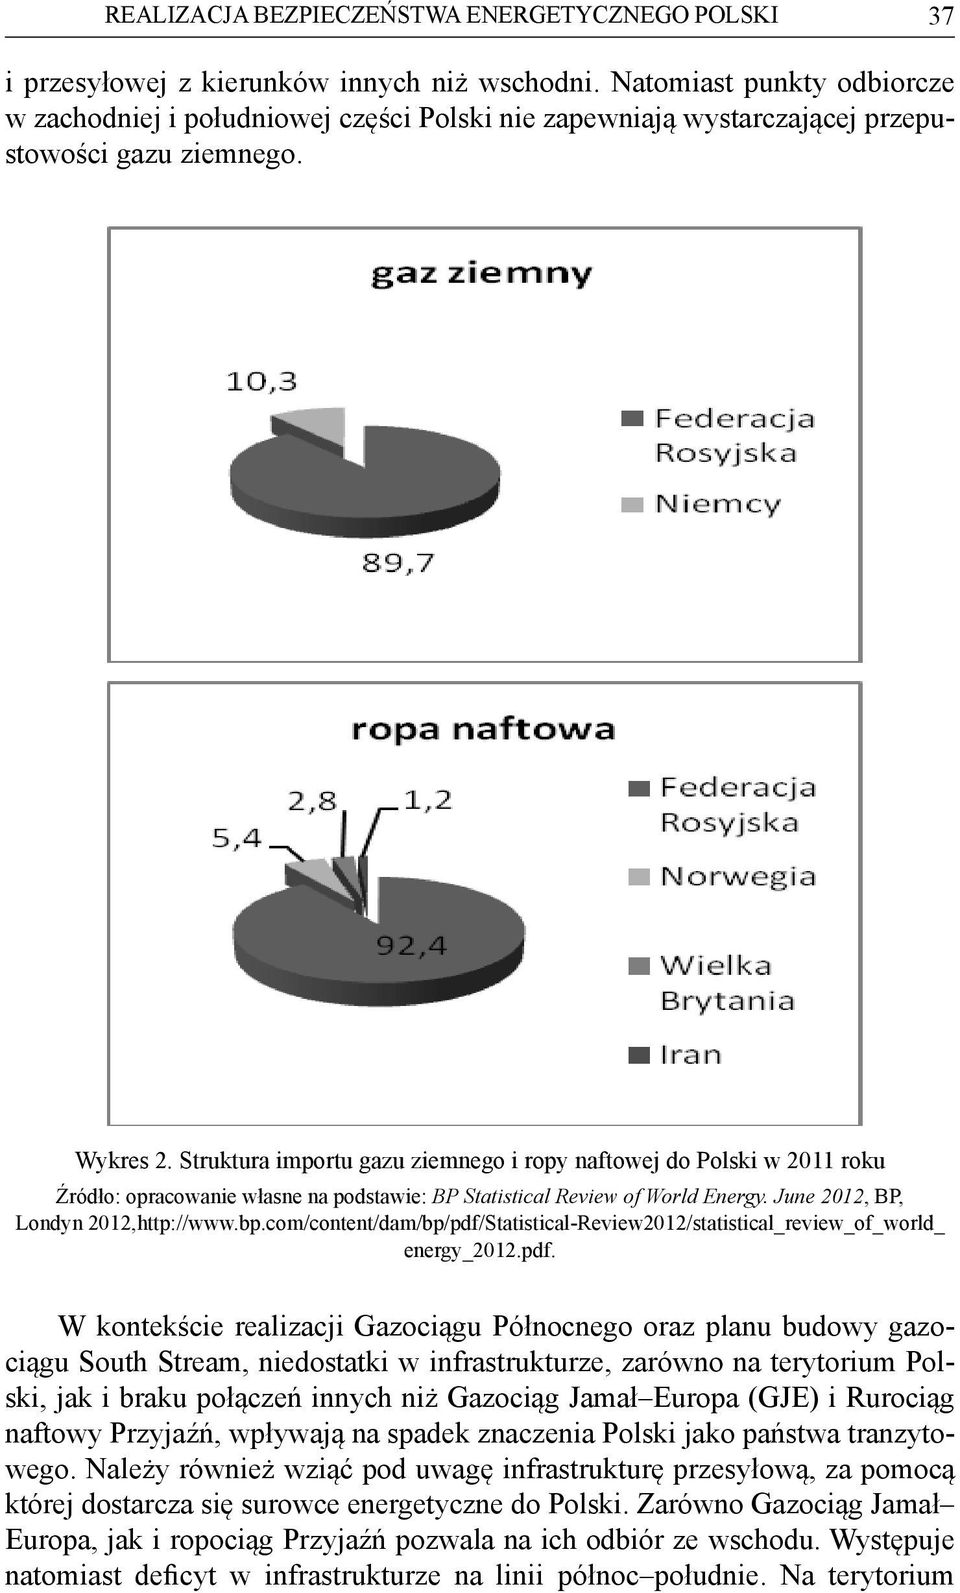 Struktura importu gazu ziemnego i ropy naftowej do Polski w 2011 roku Źródło: opracowanie własne na podstawie: BP Statistical Review of World Energy. June 2012, BP, Londyn 2012,http://www.bp.